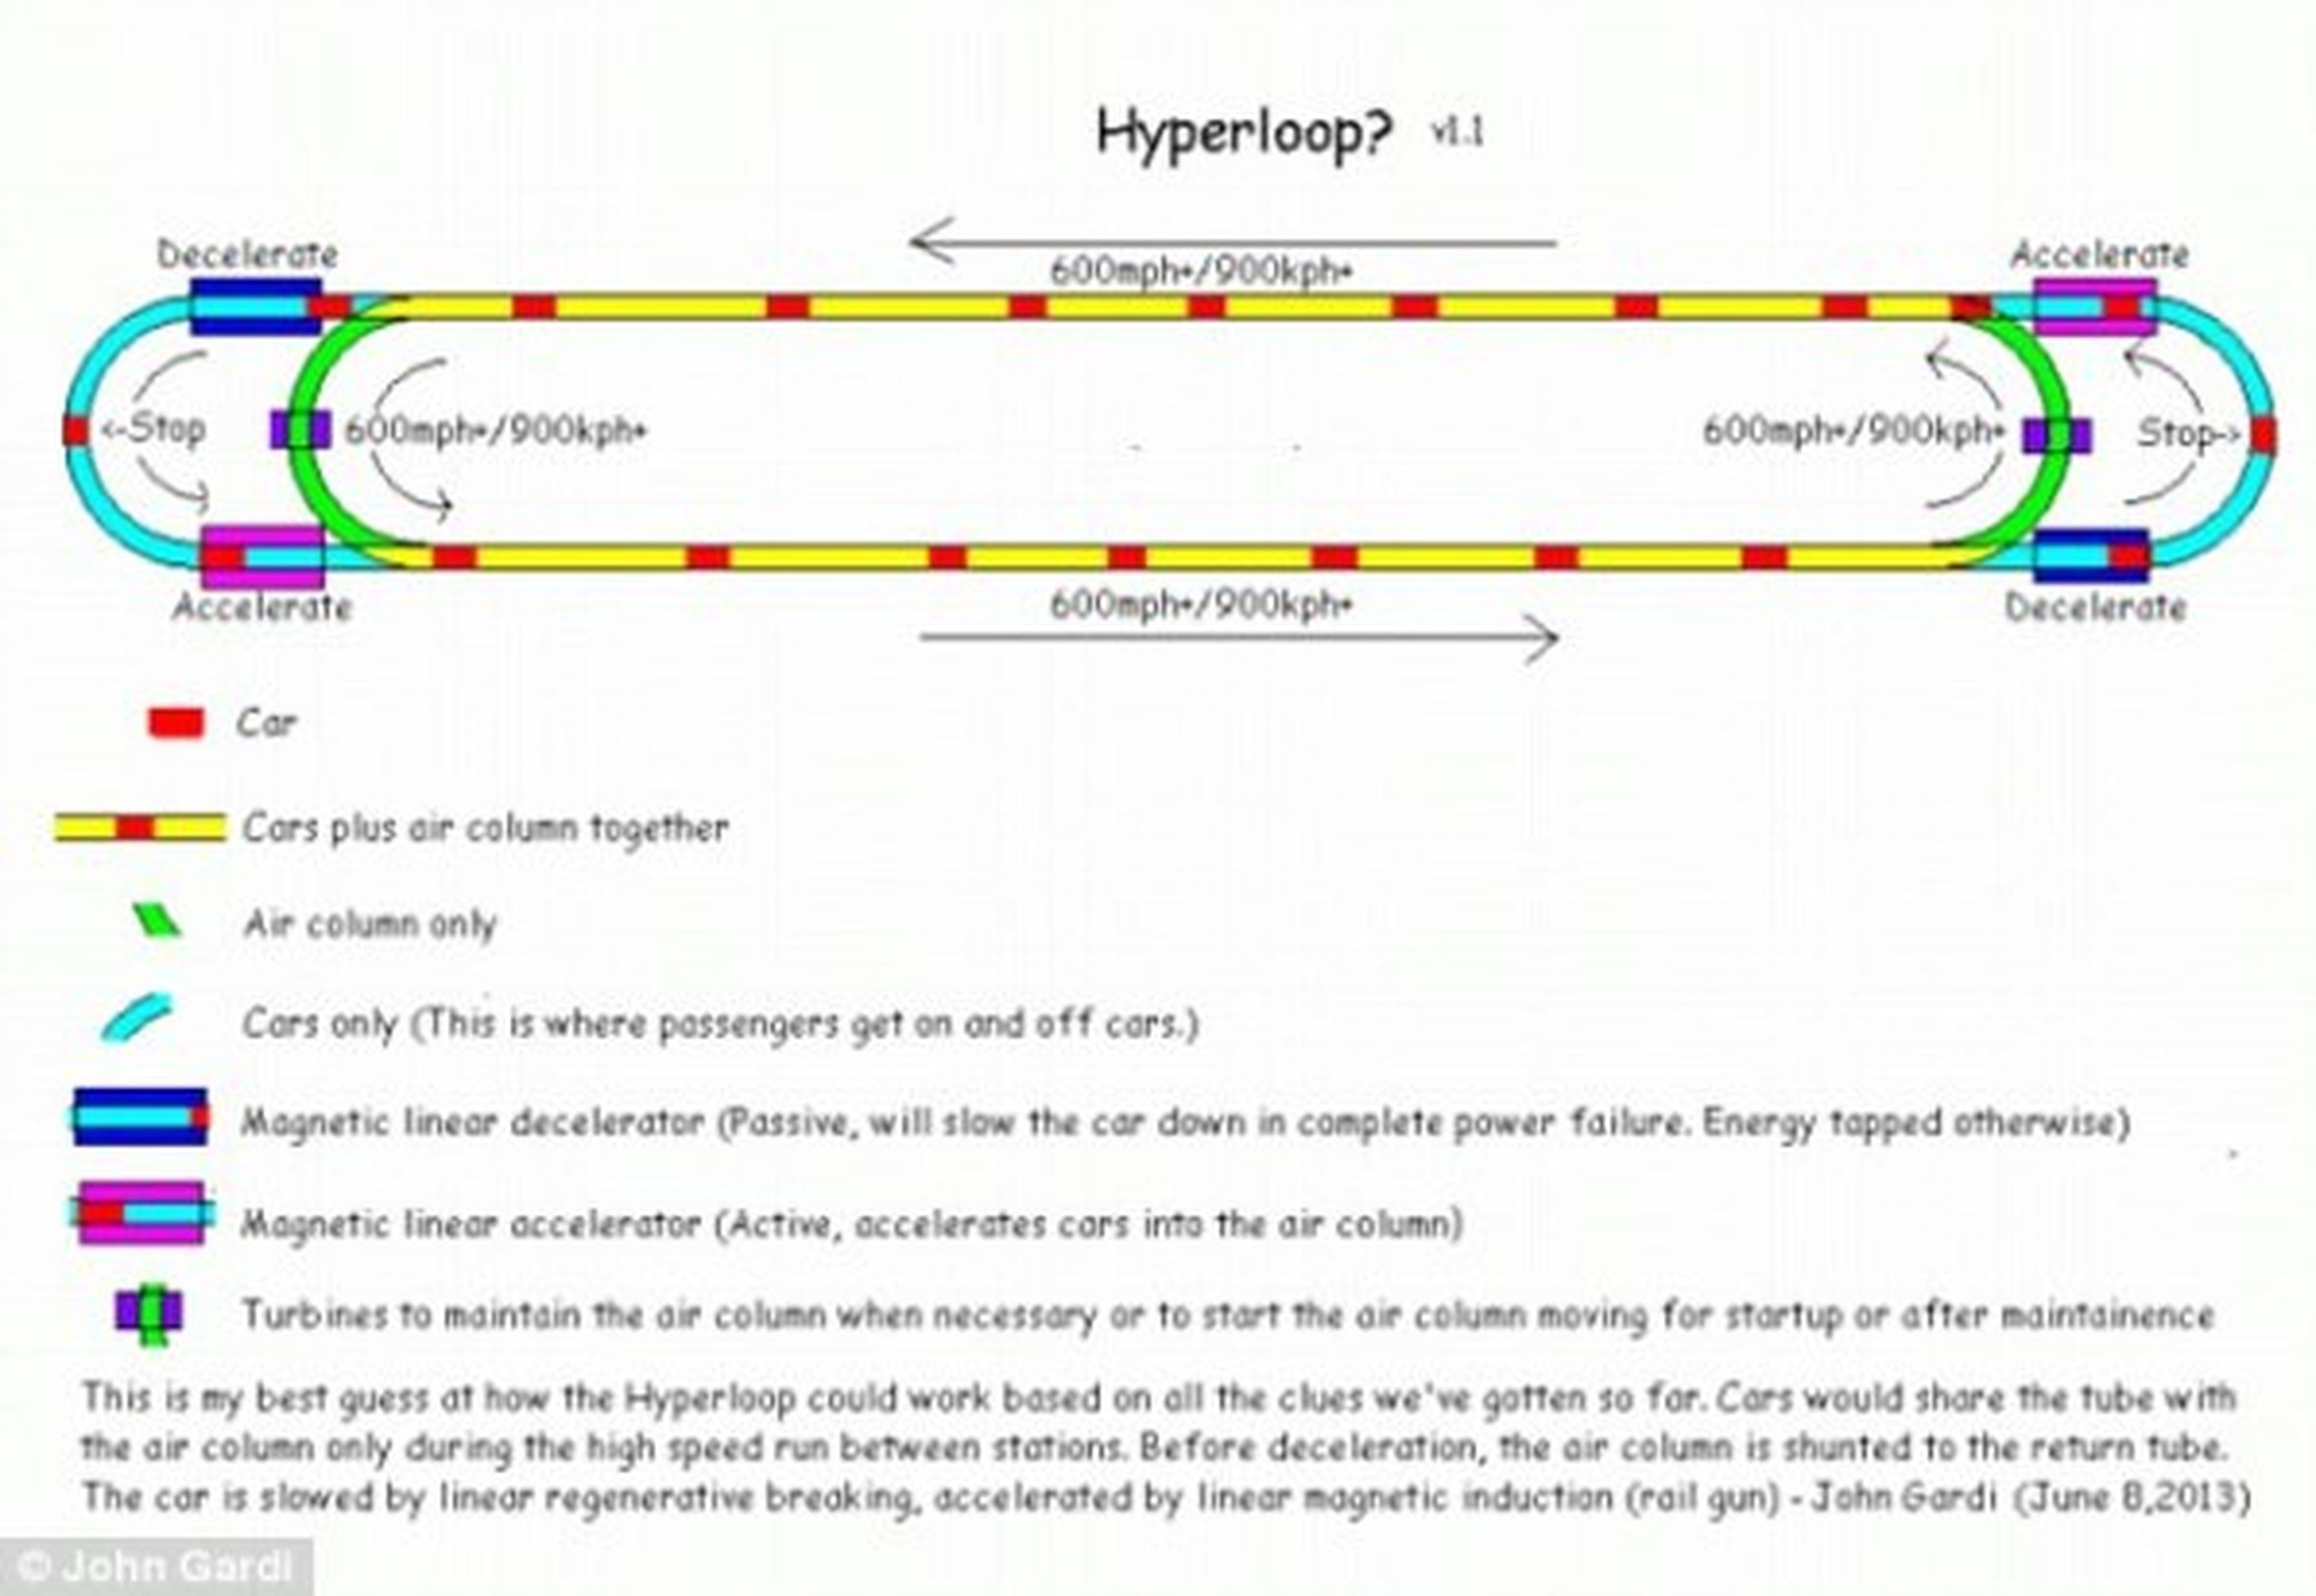 Diseño del Hyperloop